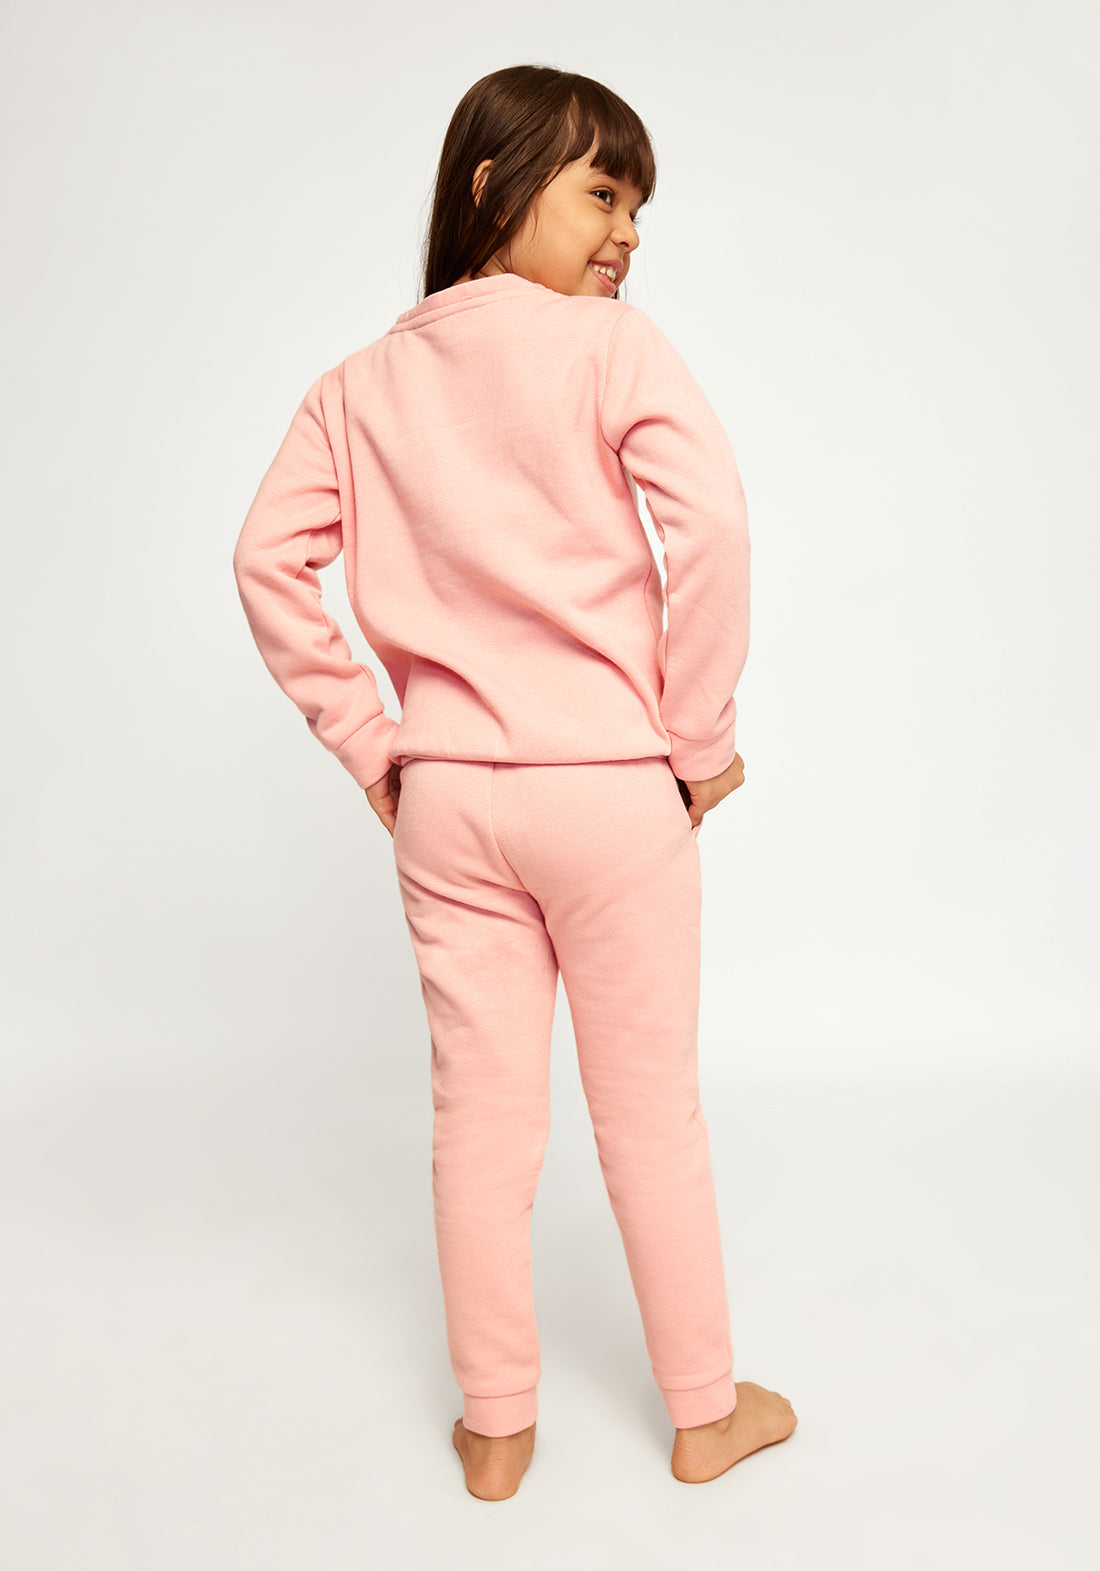 Baby Pink Fleece Sweatshirt with Rainbow Print